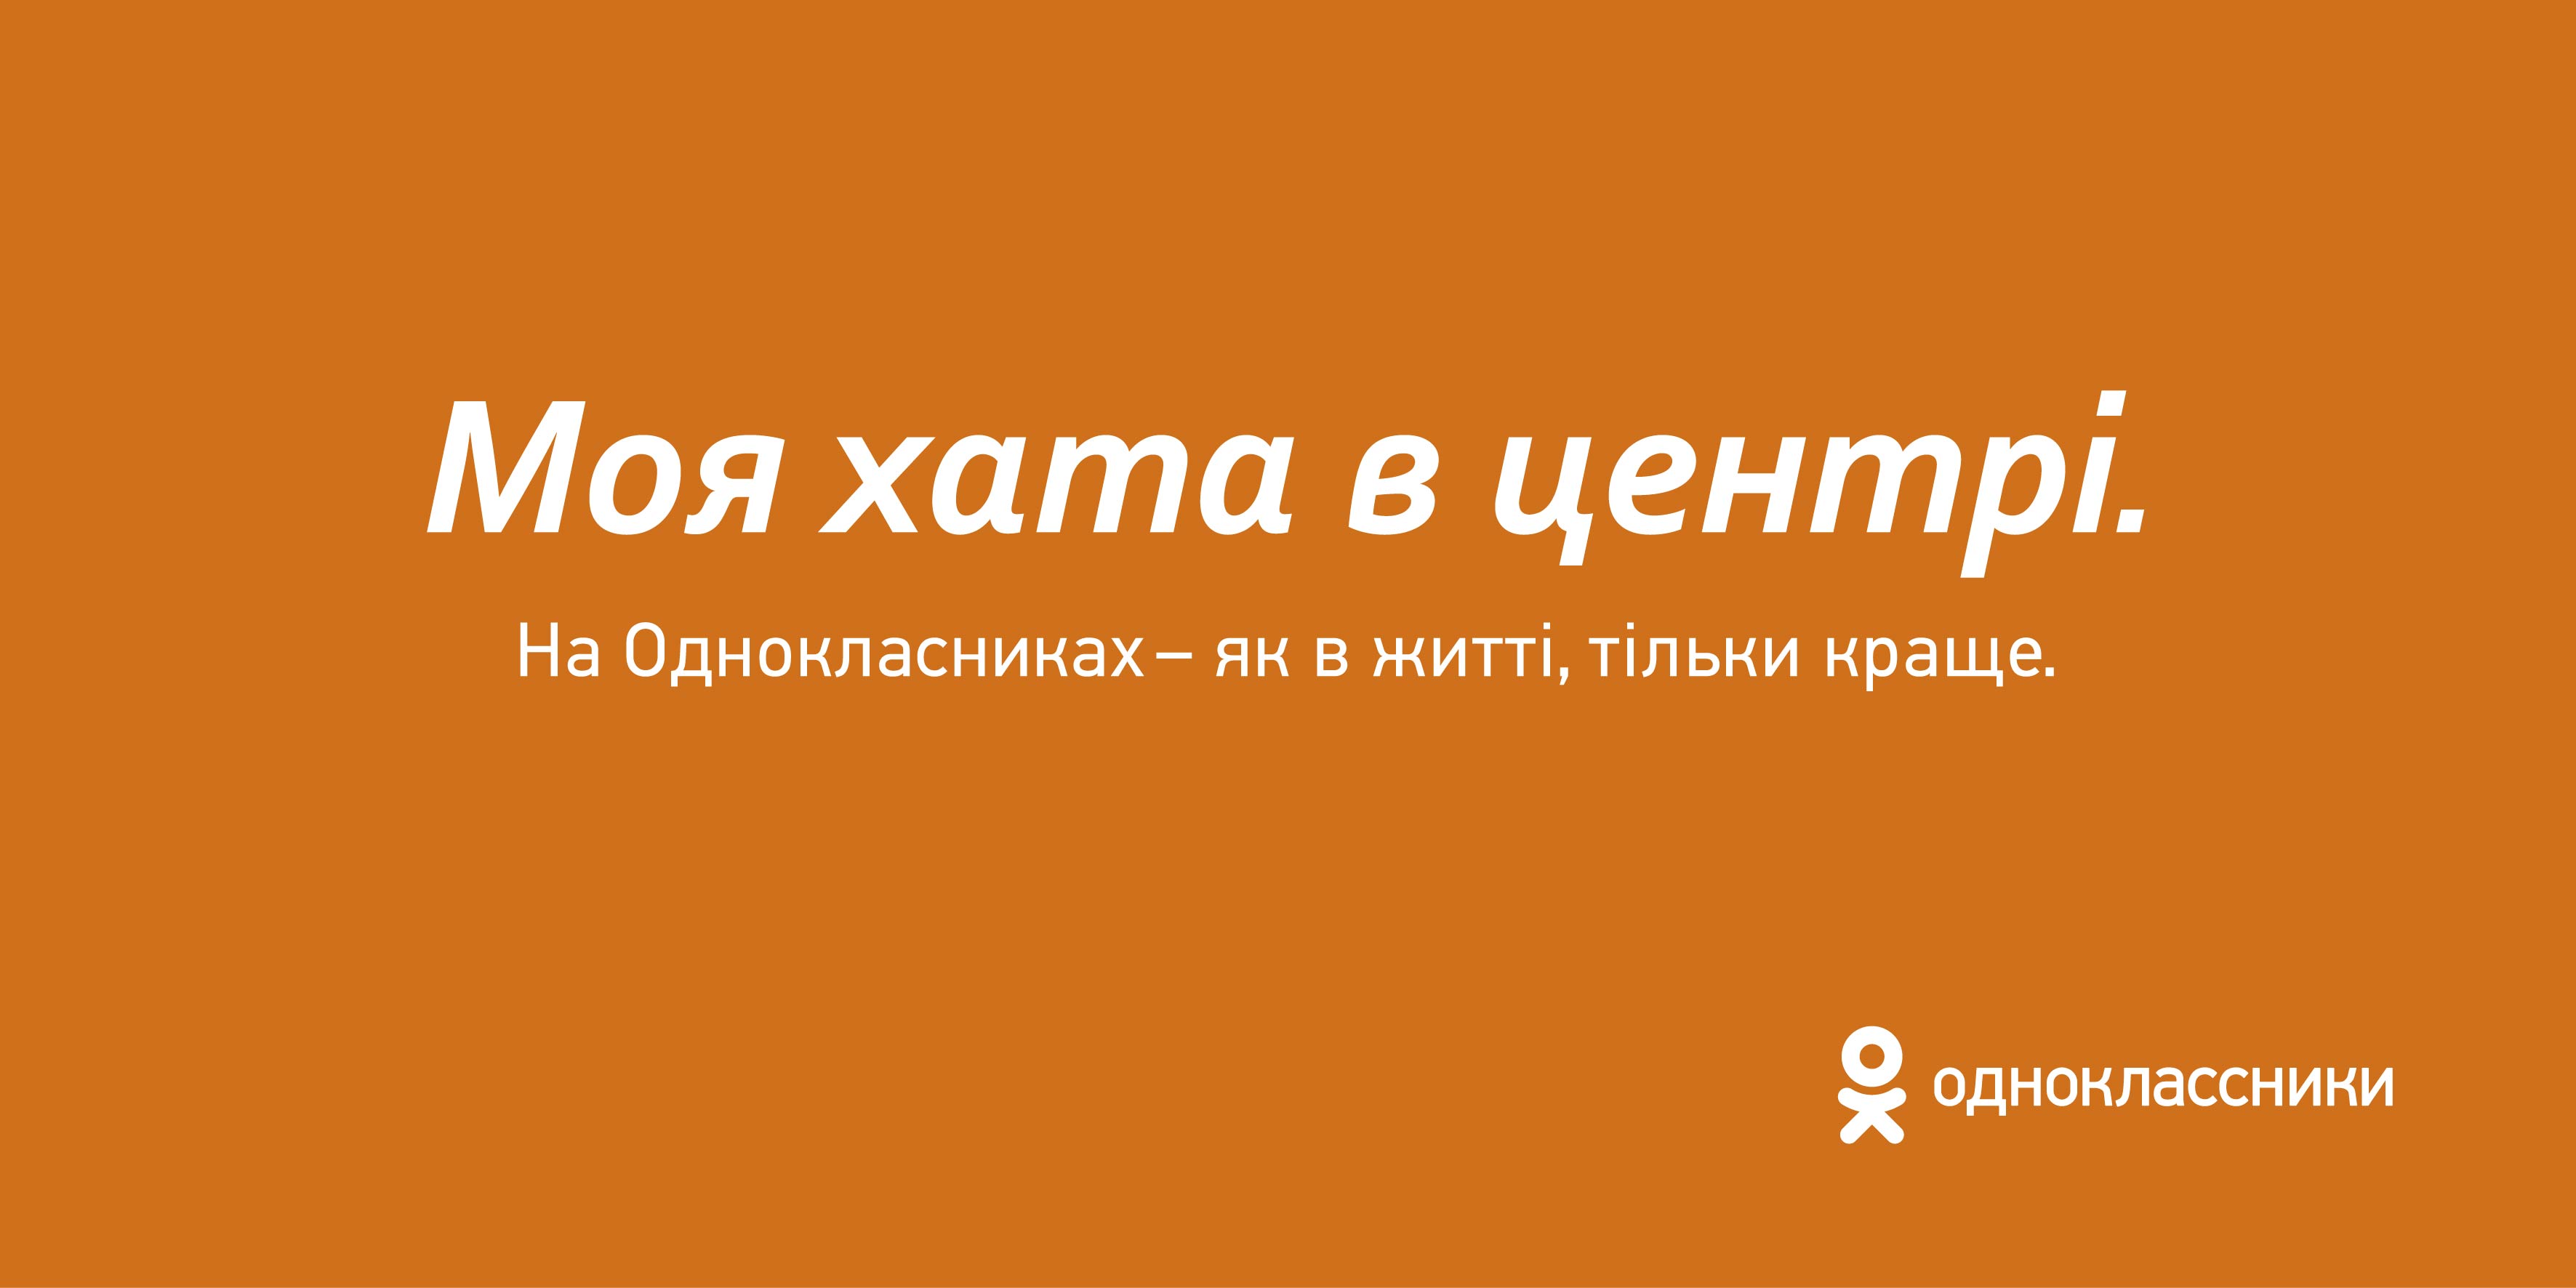 Социальная сеть Одноклассники запустила рекламную кампанию 